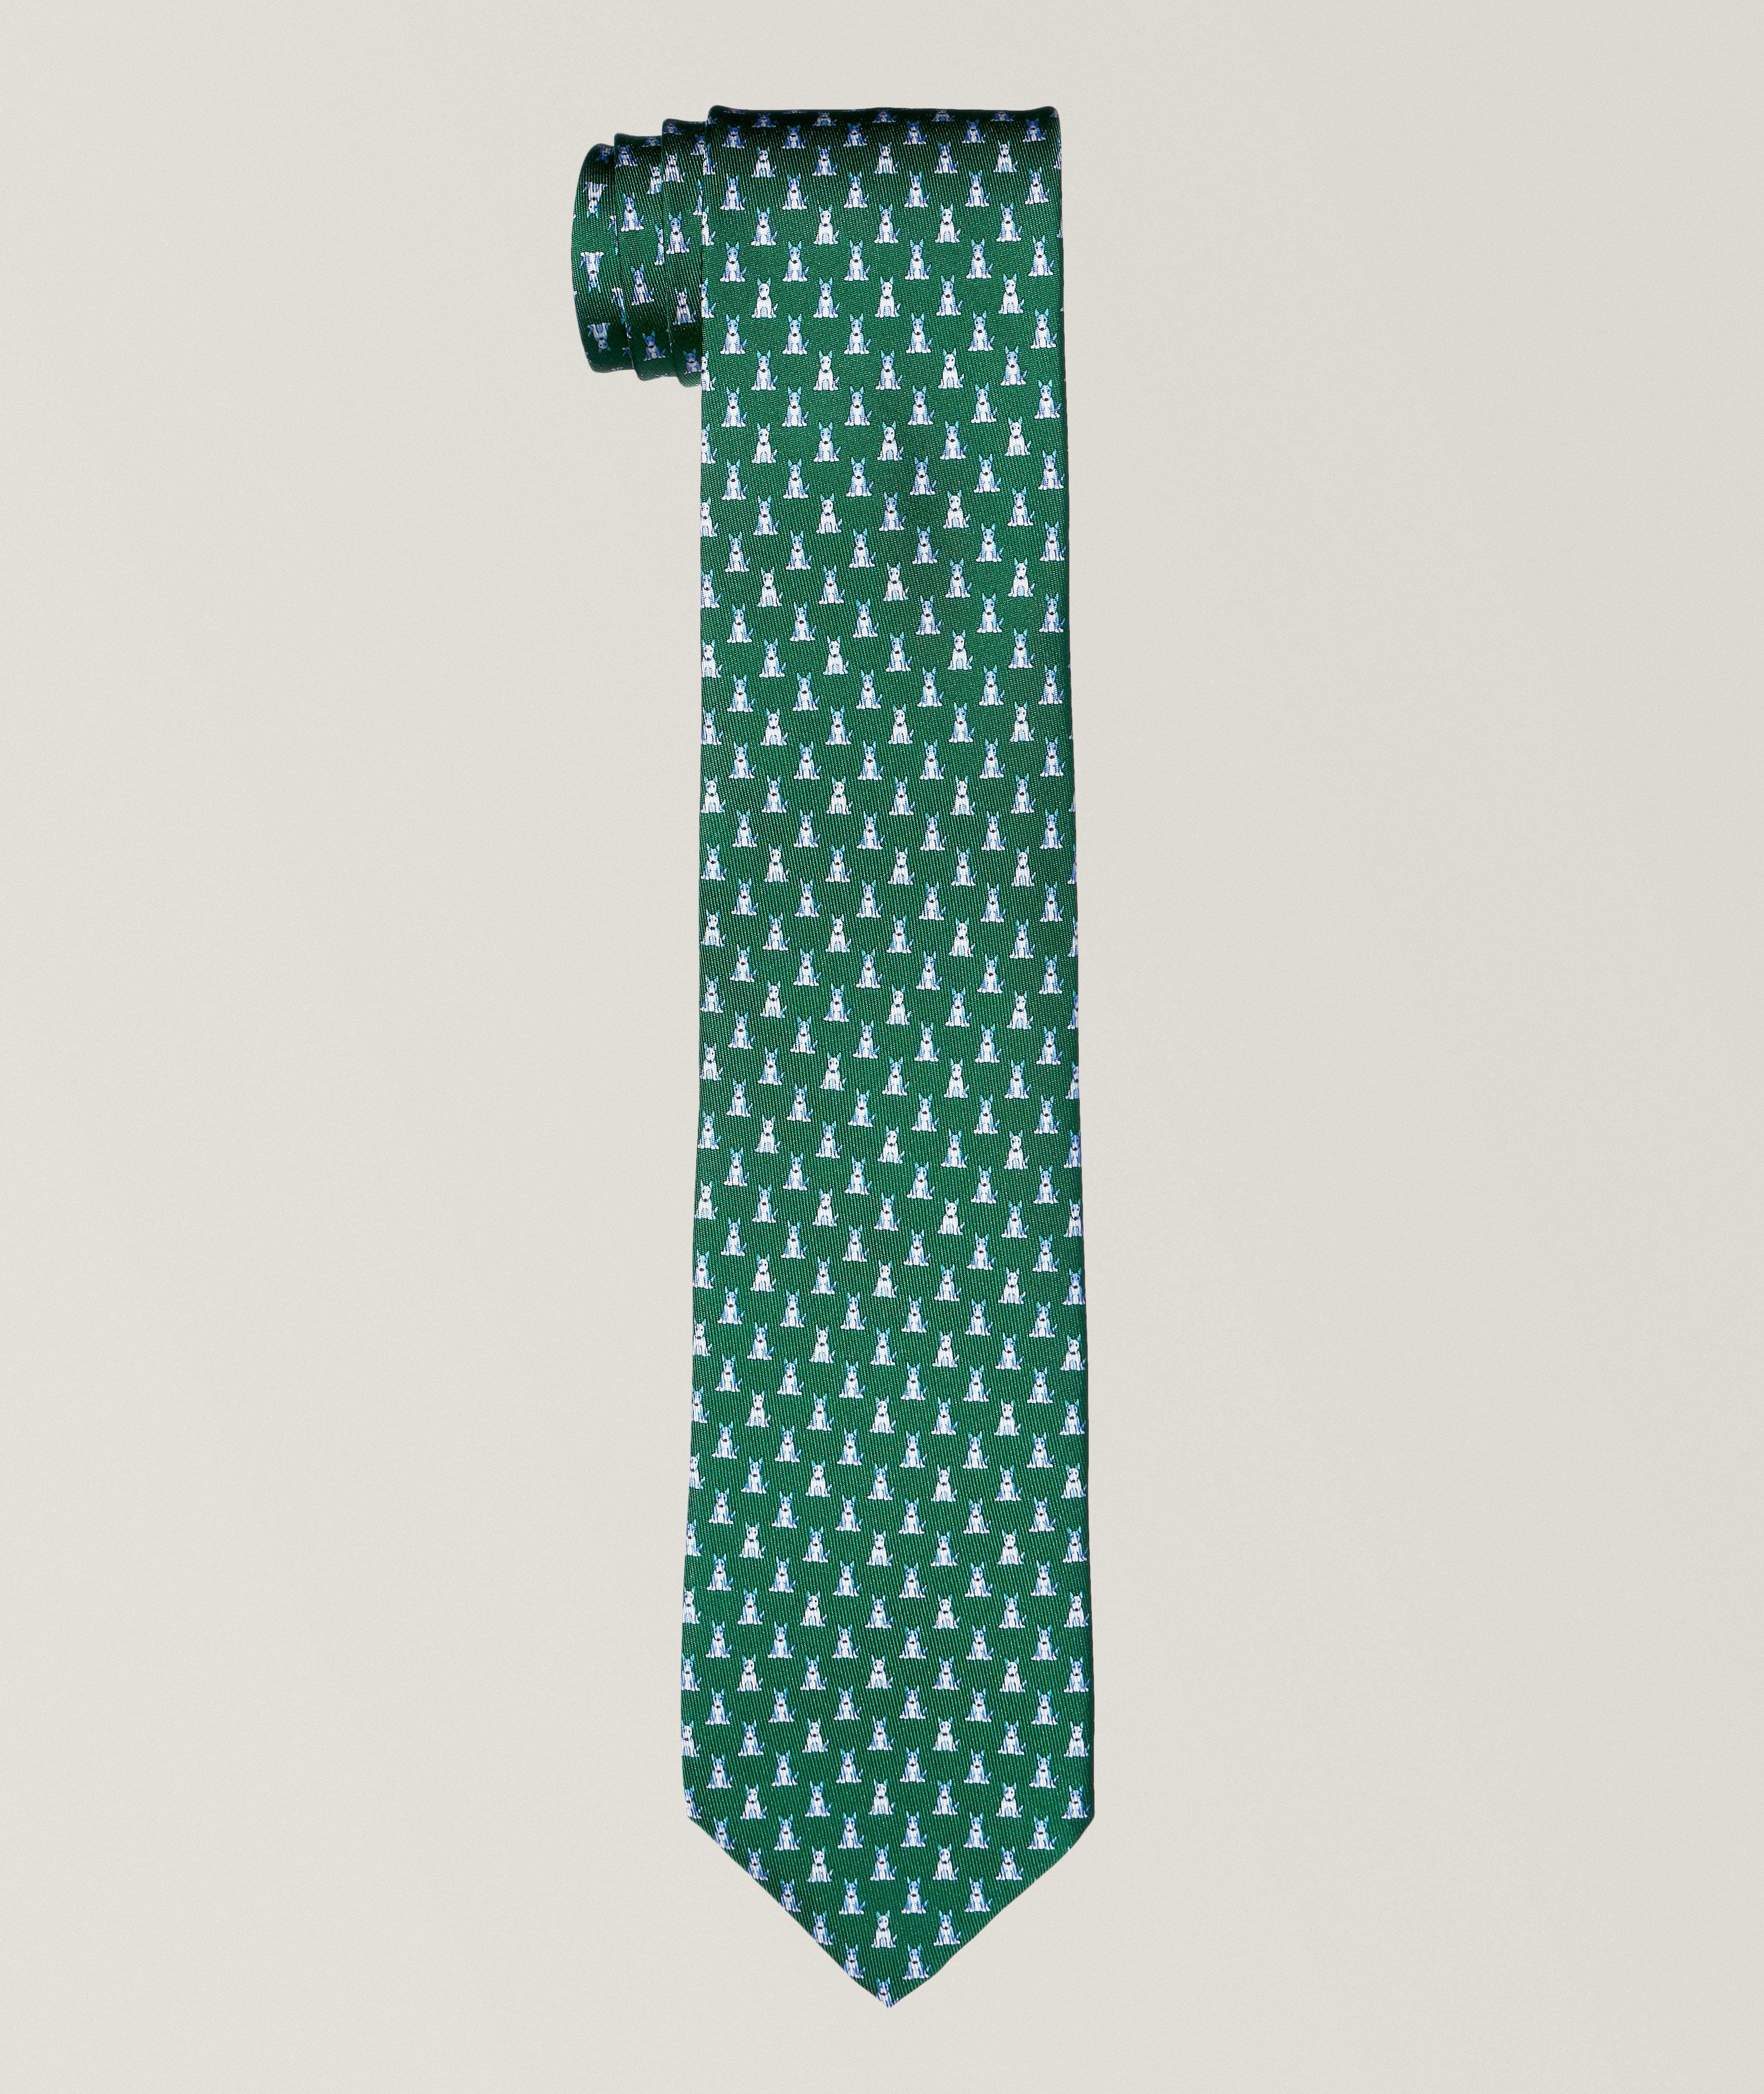 Cravate en soie à motif de chiens image 0